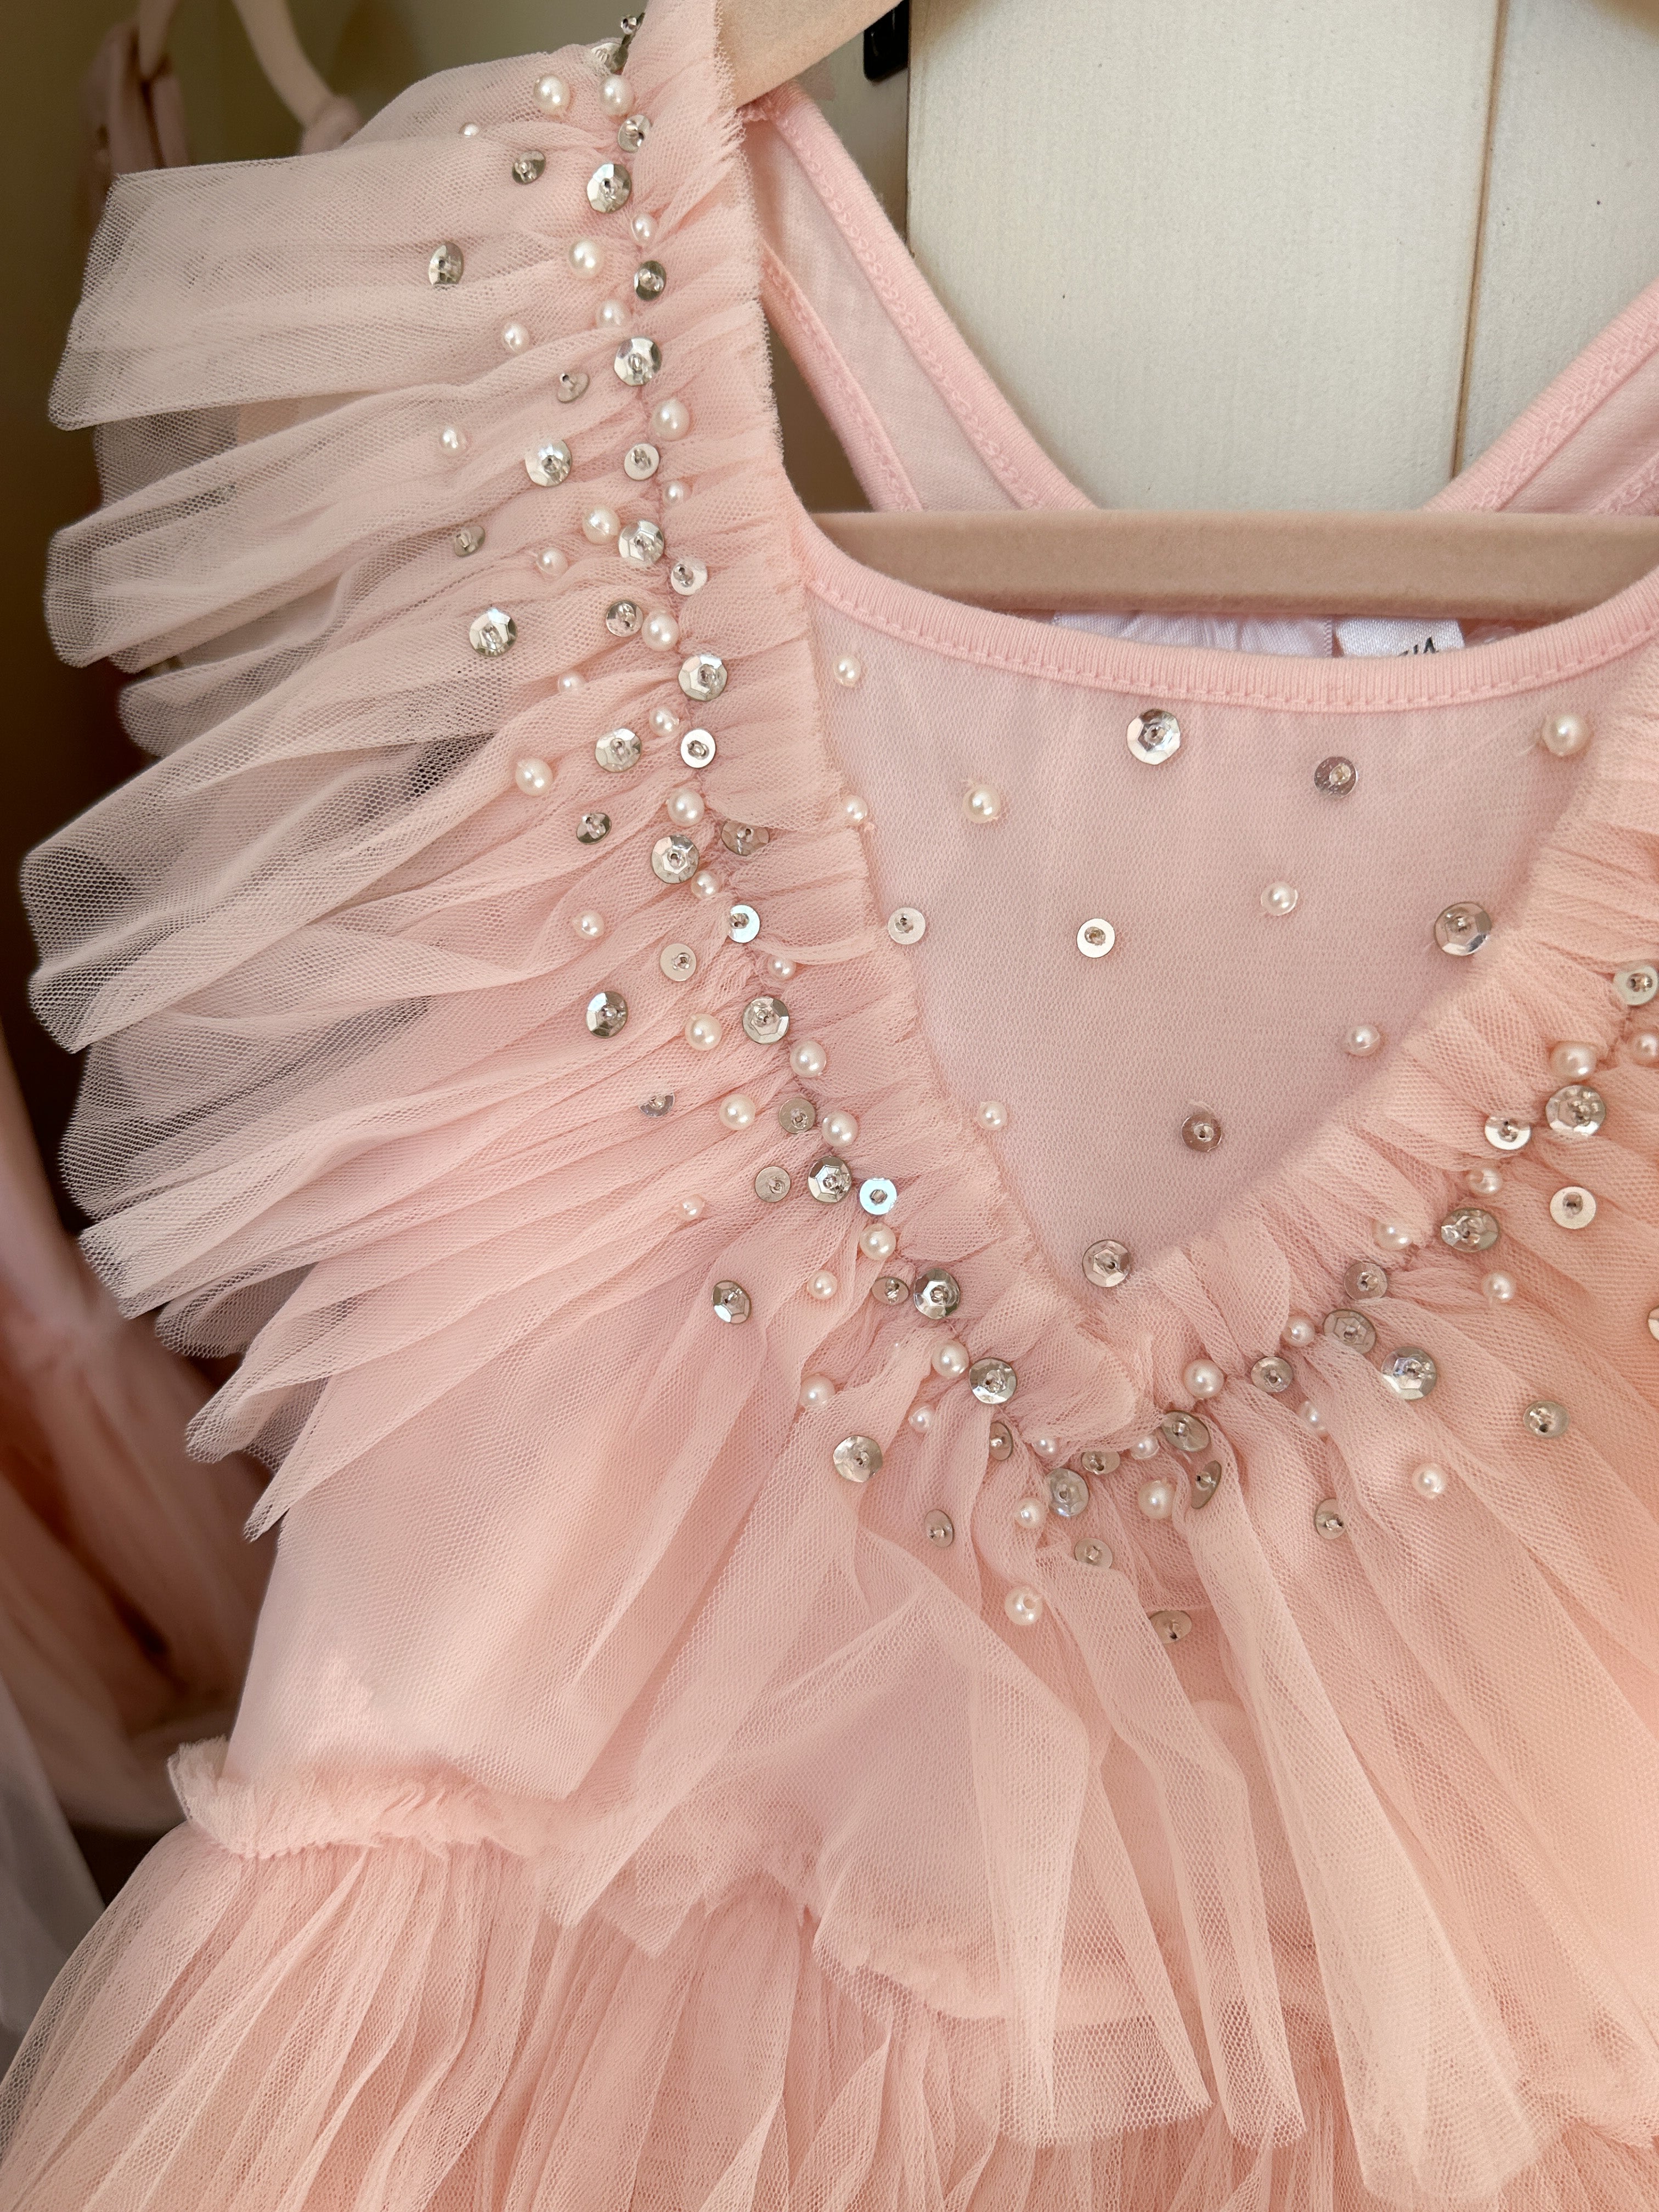 The “Margot” Blush Pink Tutu Dress